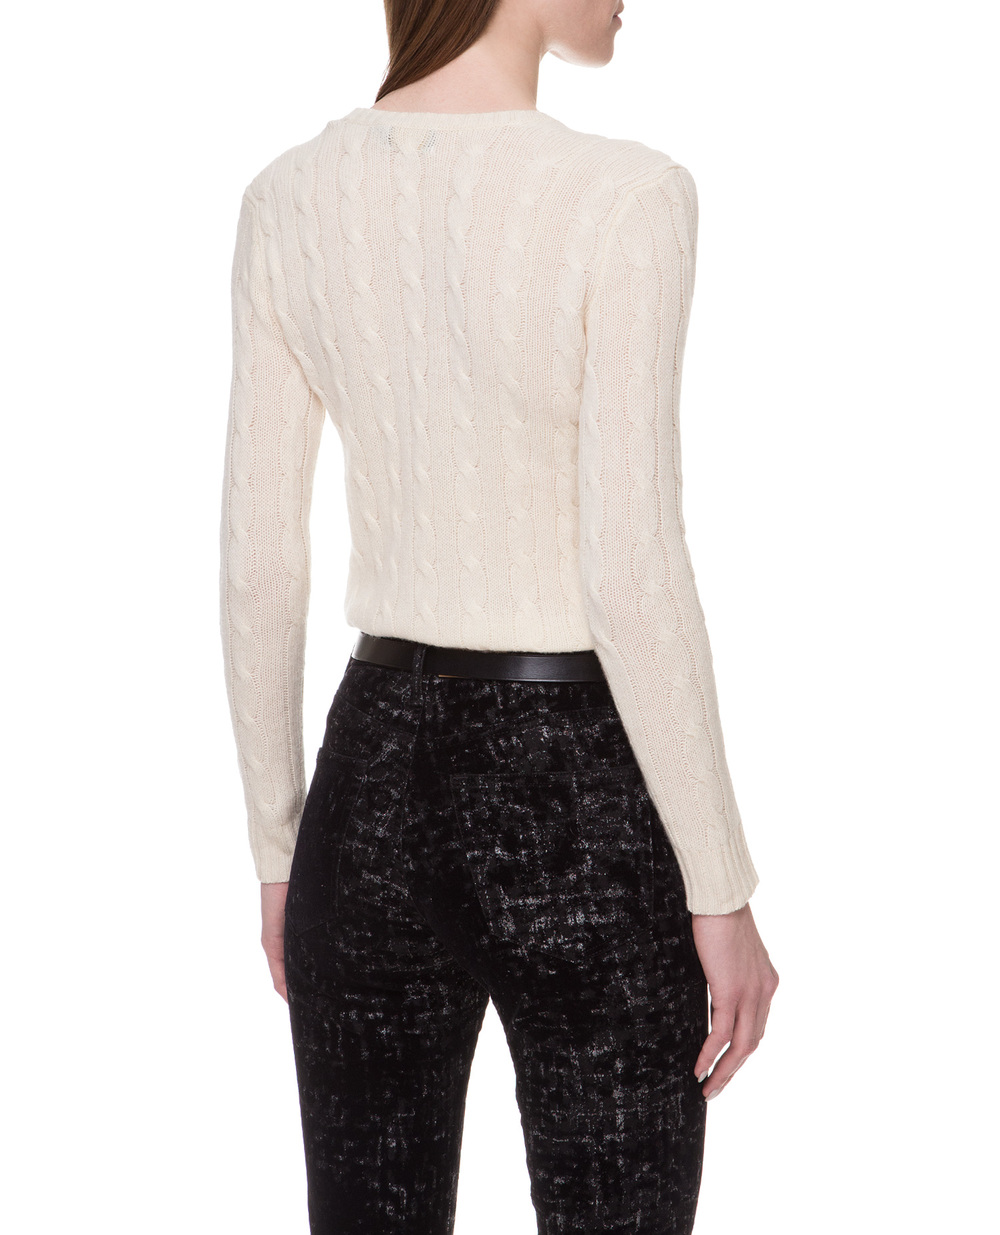 Шерстяной пуловер Polo Ralph Lauren 211508656015FW19, белый цвет • Купить в интернет-магазине Kameron